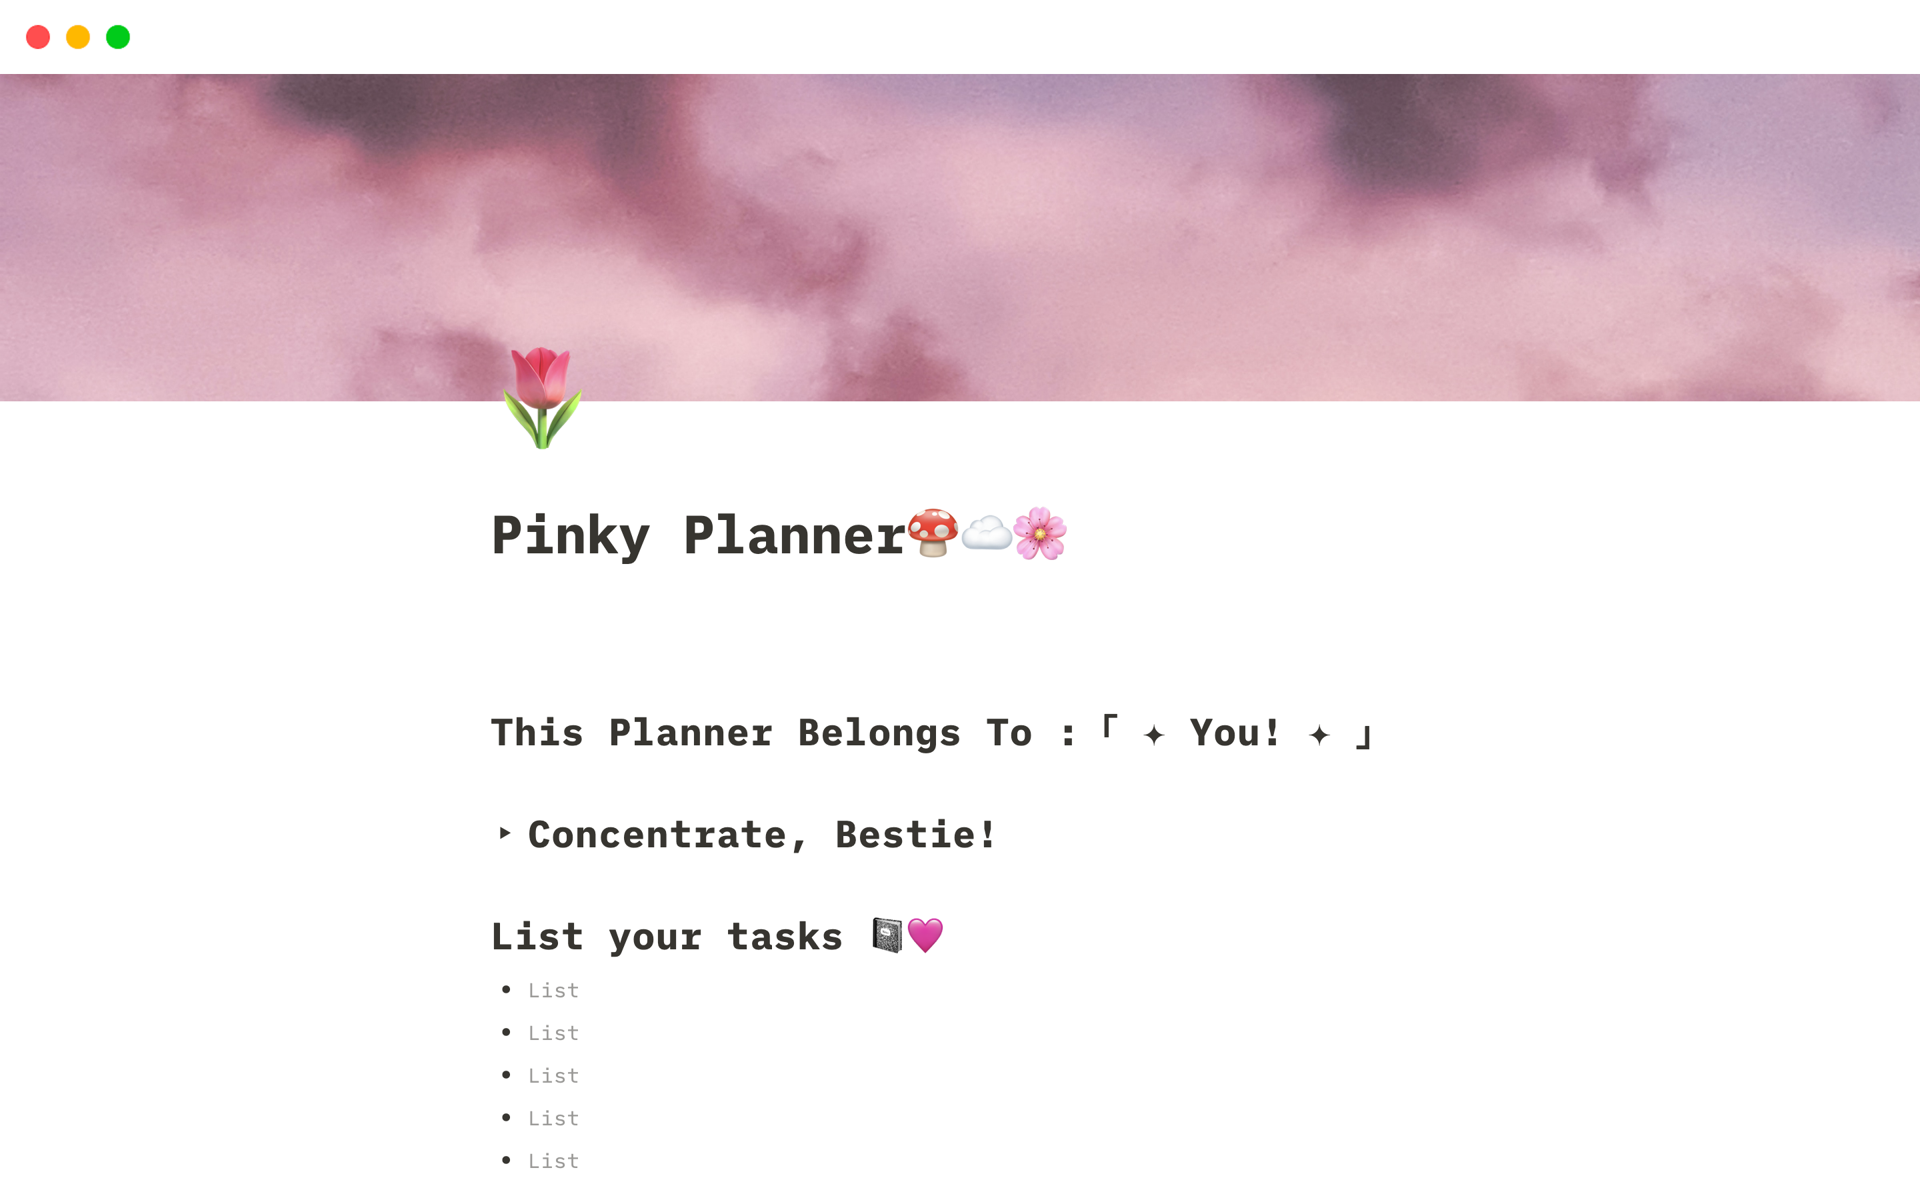 Uma prévia do modelo para Pinky Planner